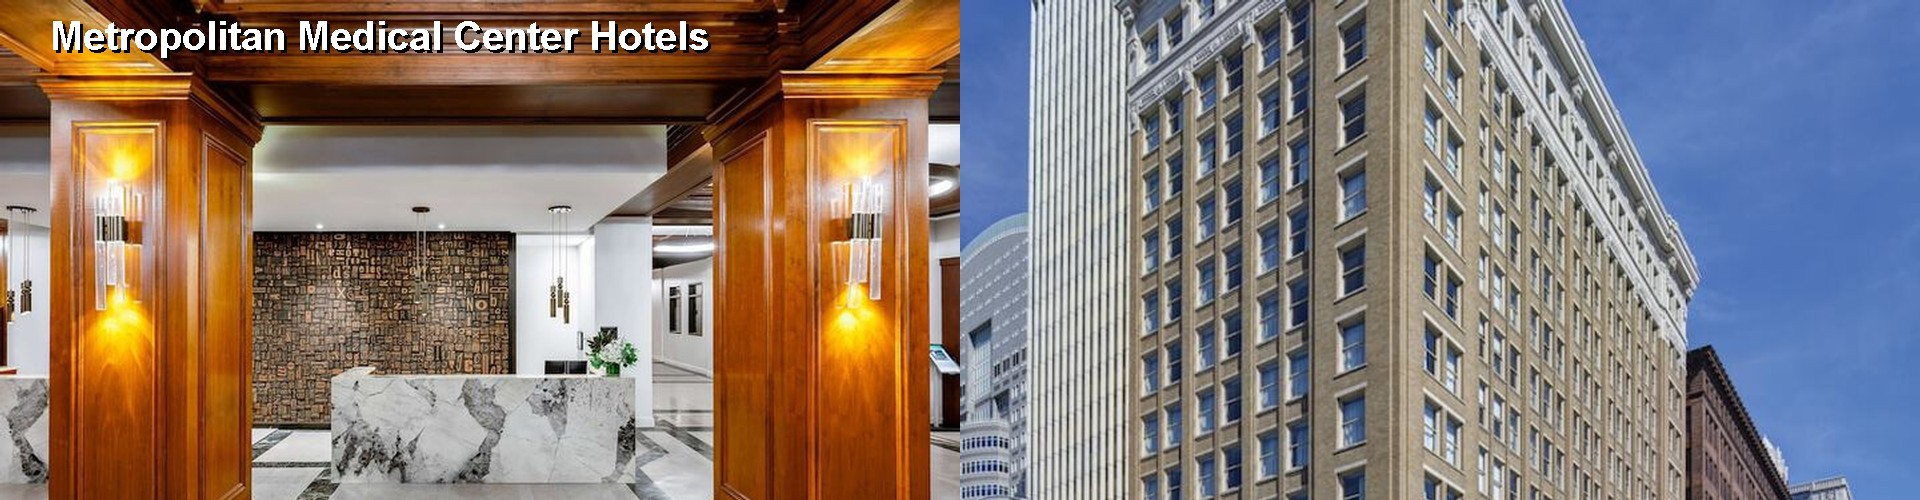 5 Best Hotels near Metropolitan Medical Center